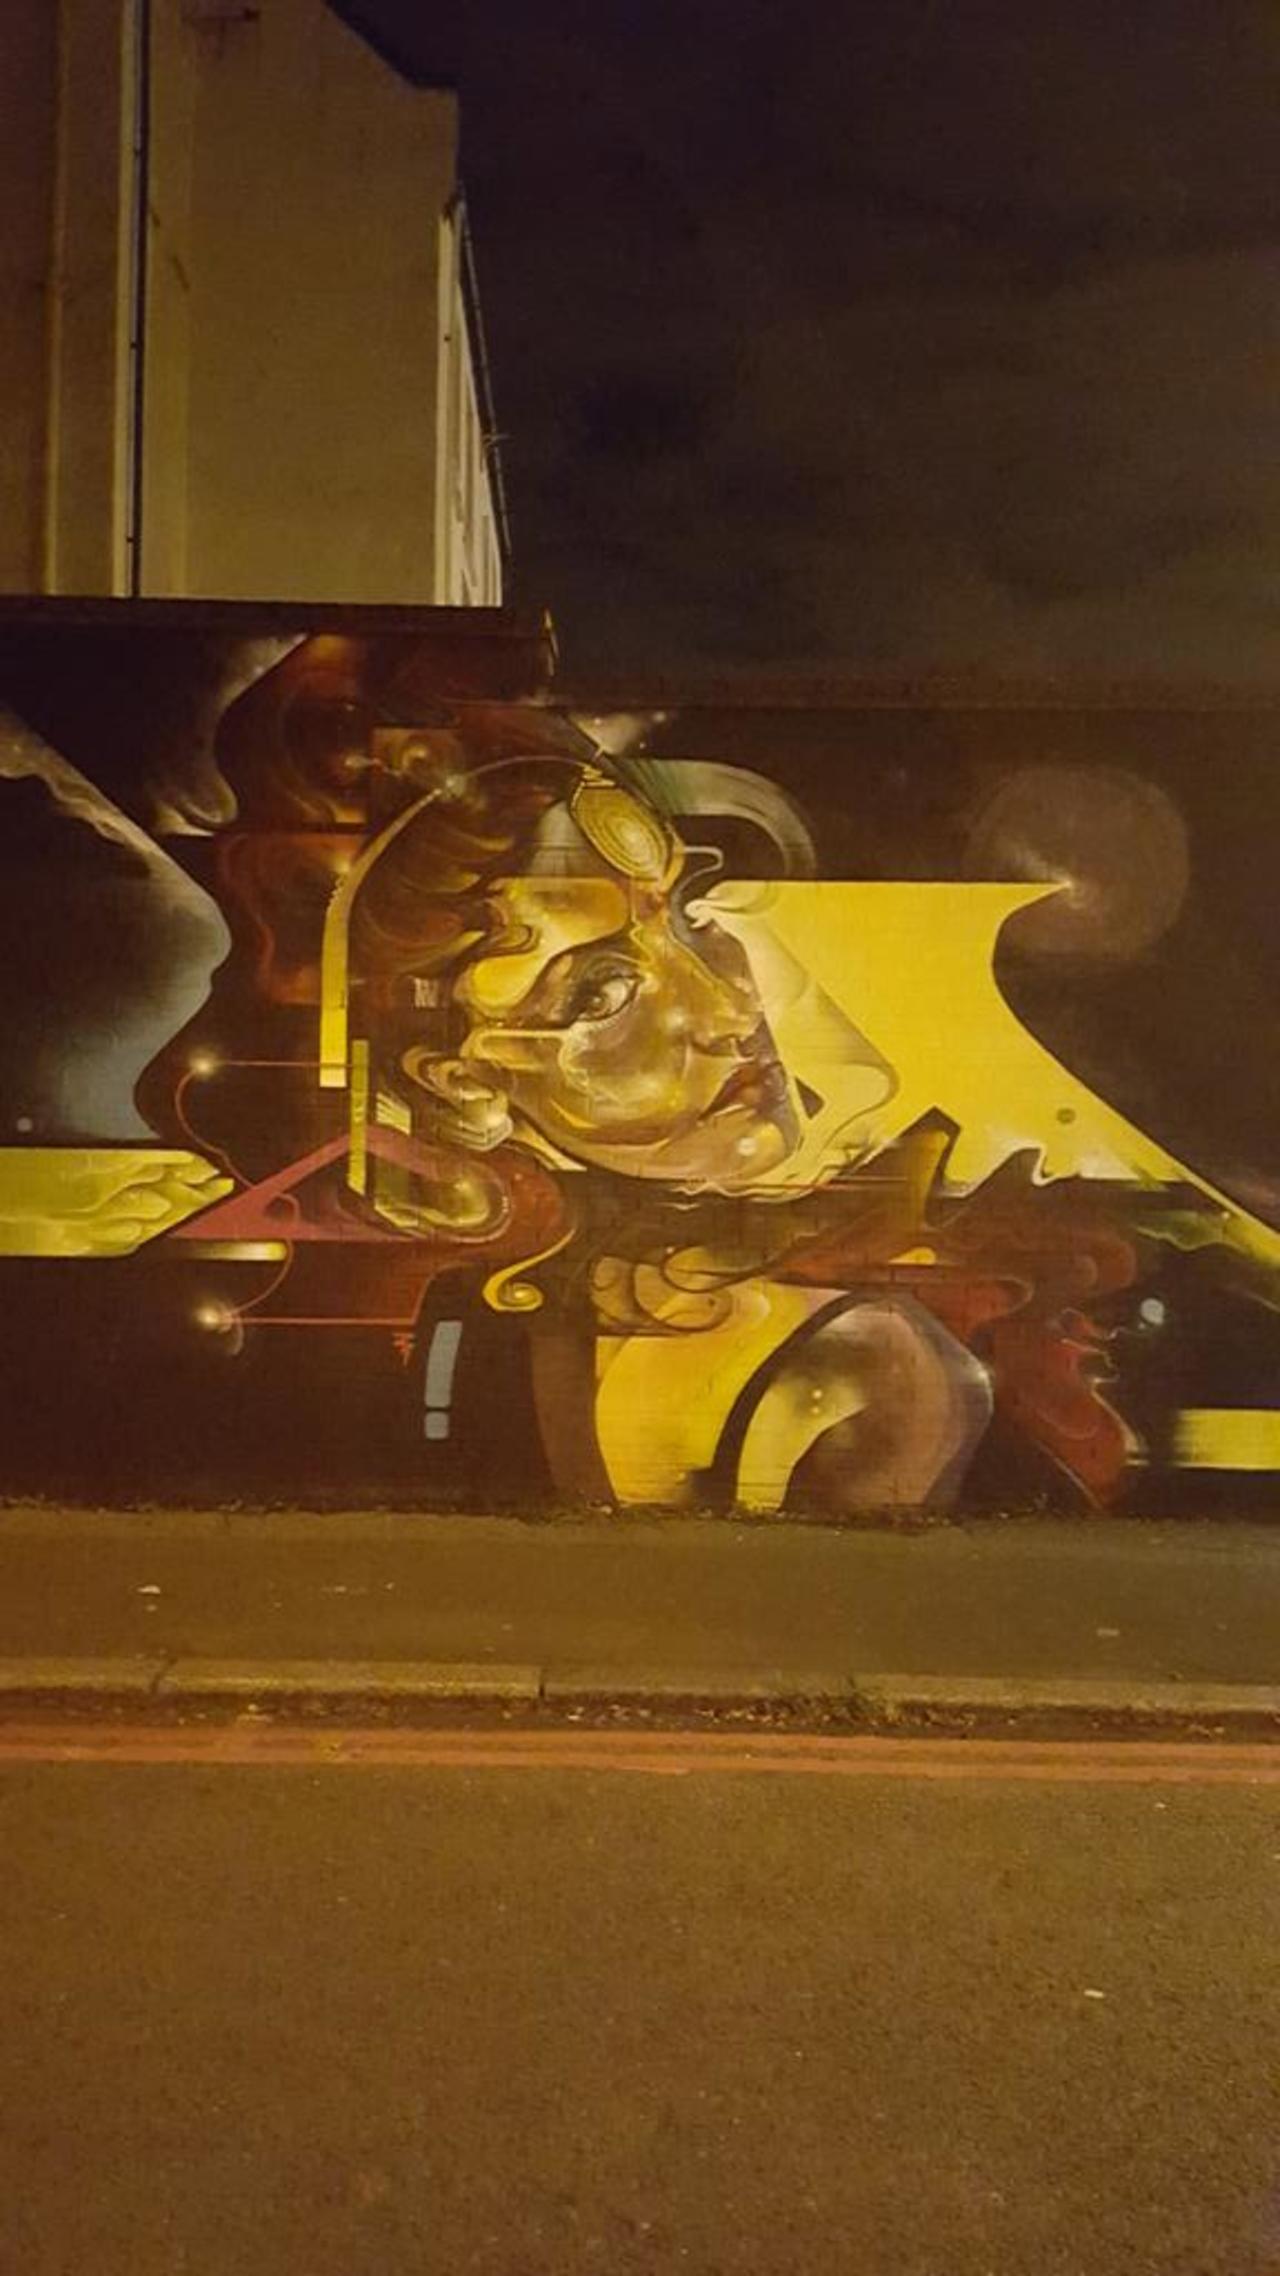 #StreetArt #graffiti #Brixton http://t.co/U63yQ91lsM